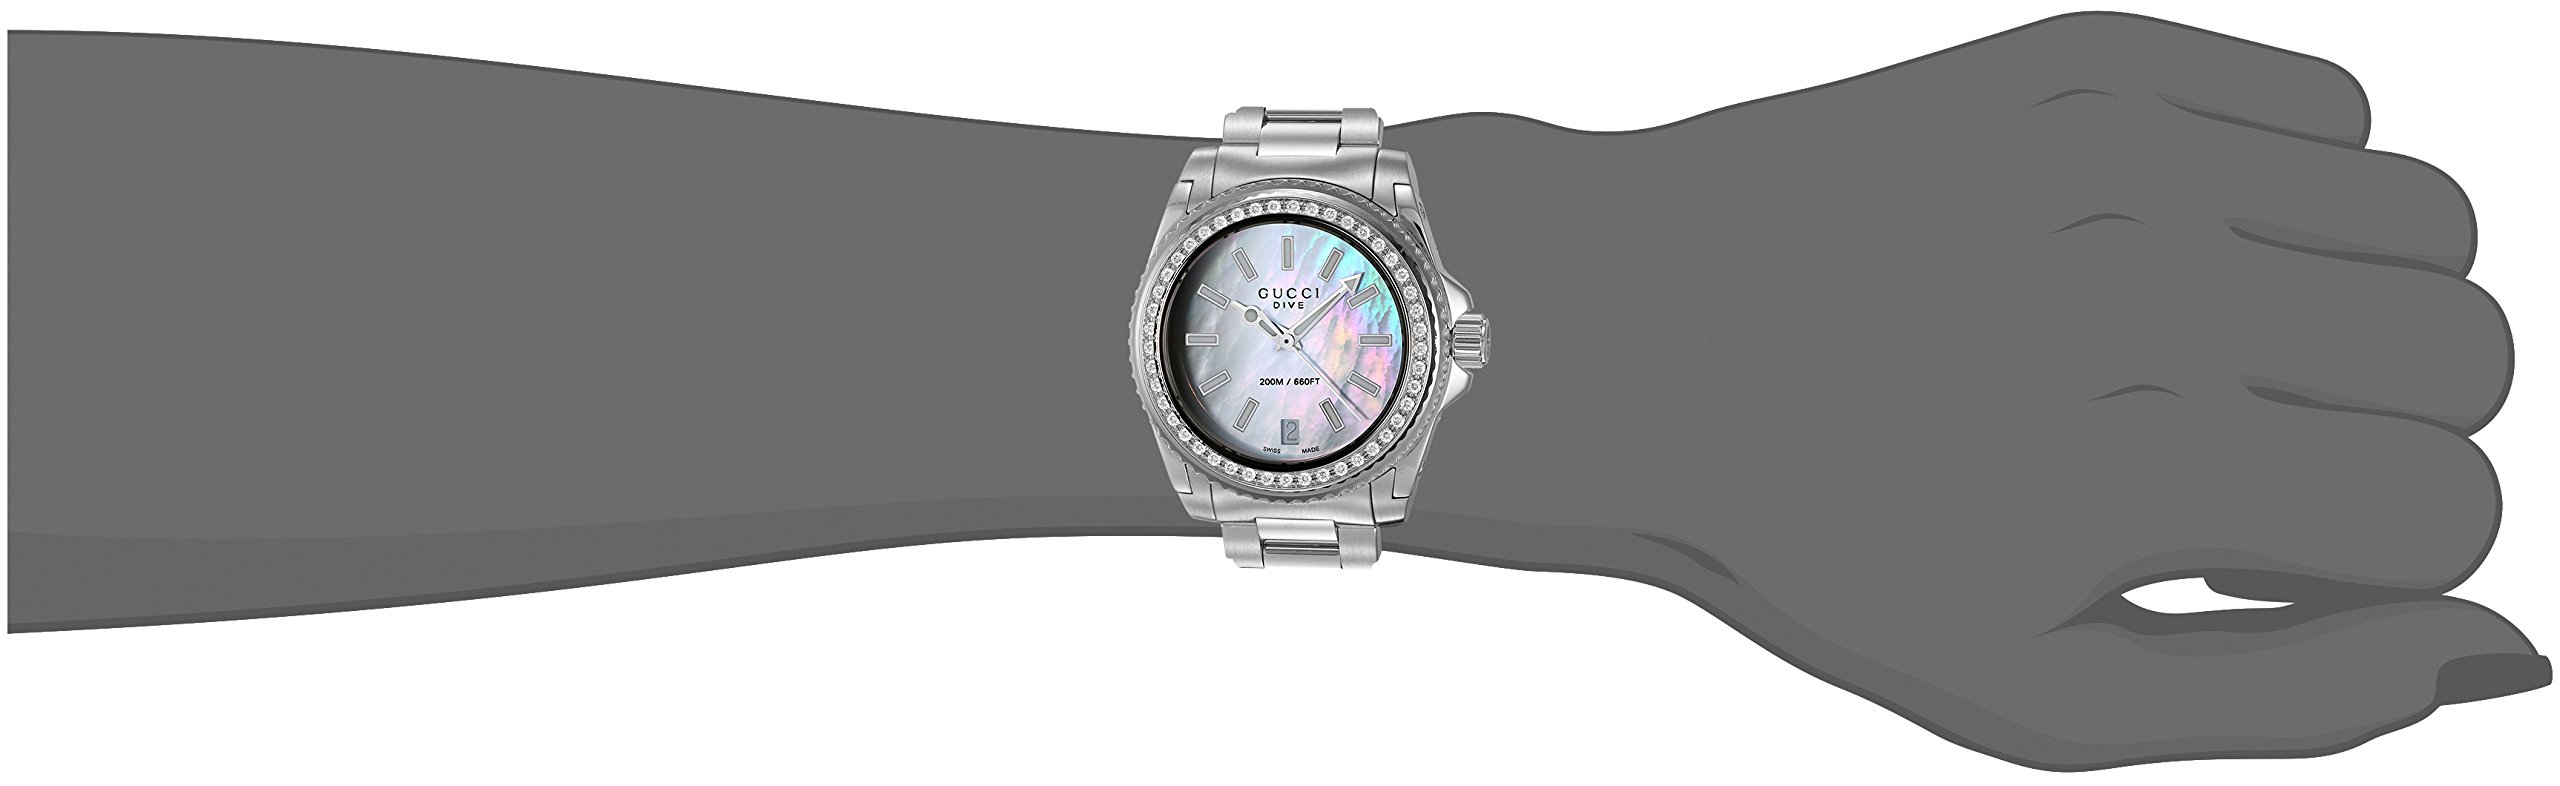 Gucci Swiss Quartz Stainless Steel Dress Silver-Toned Women's Watch(Model: YA136406)